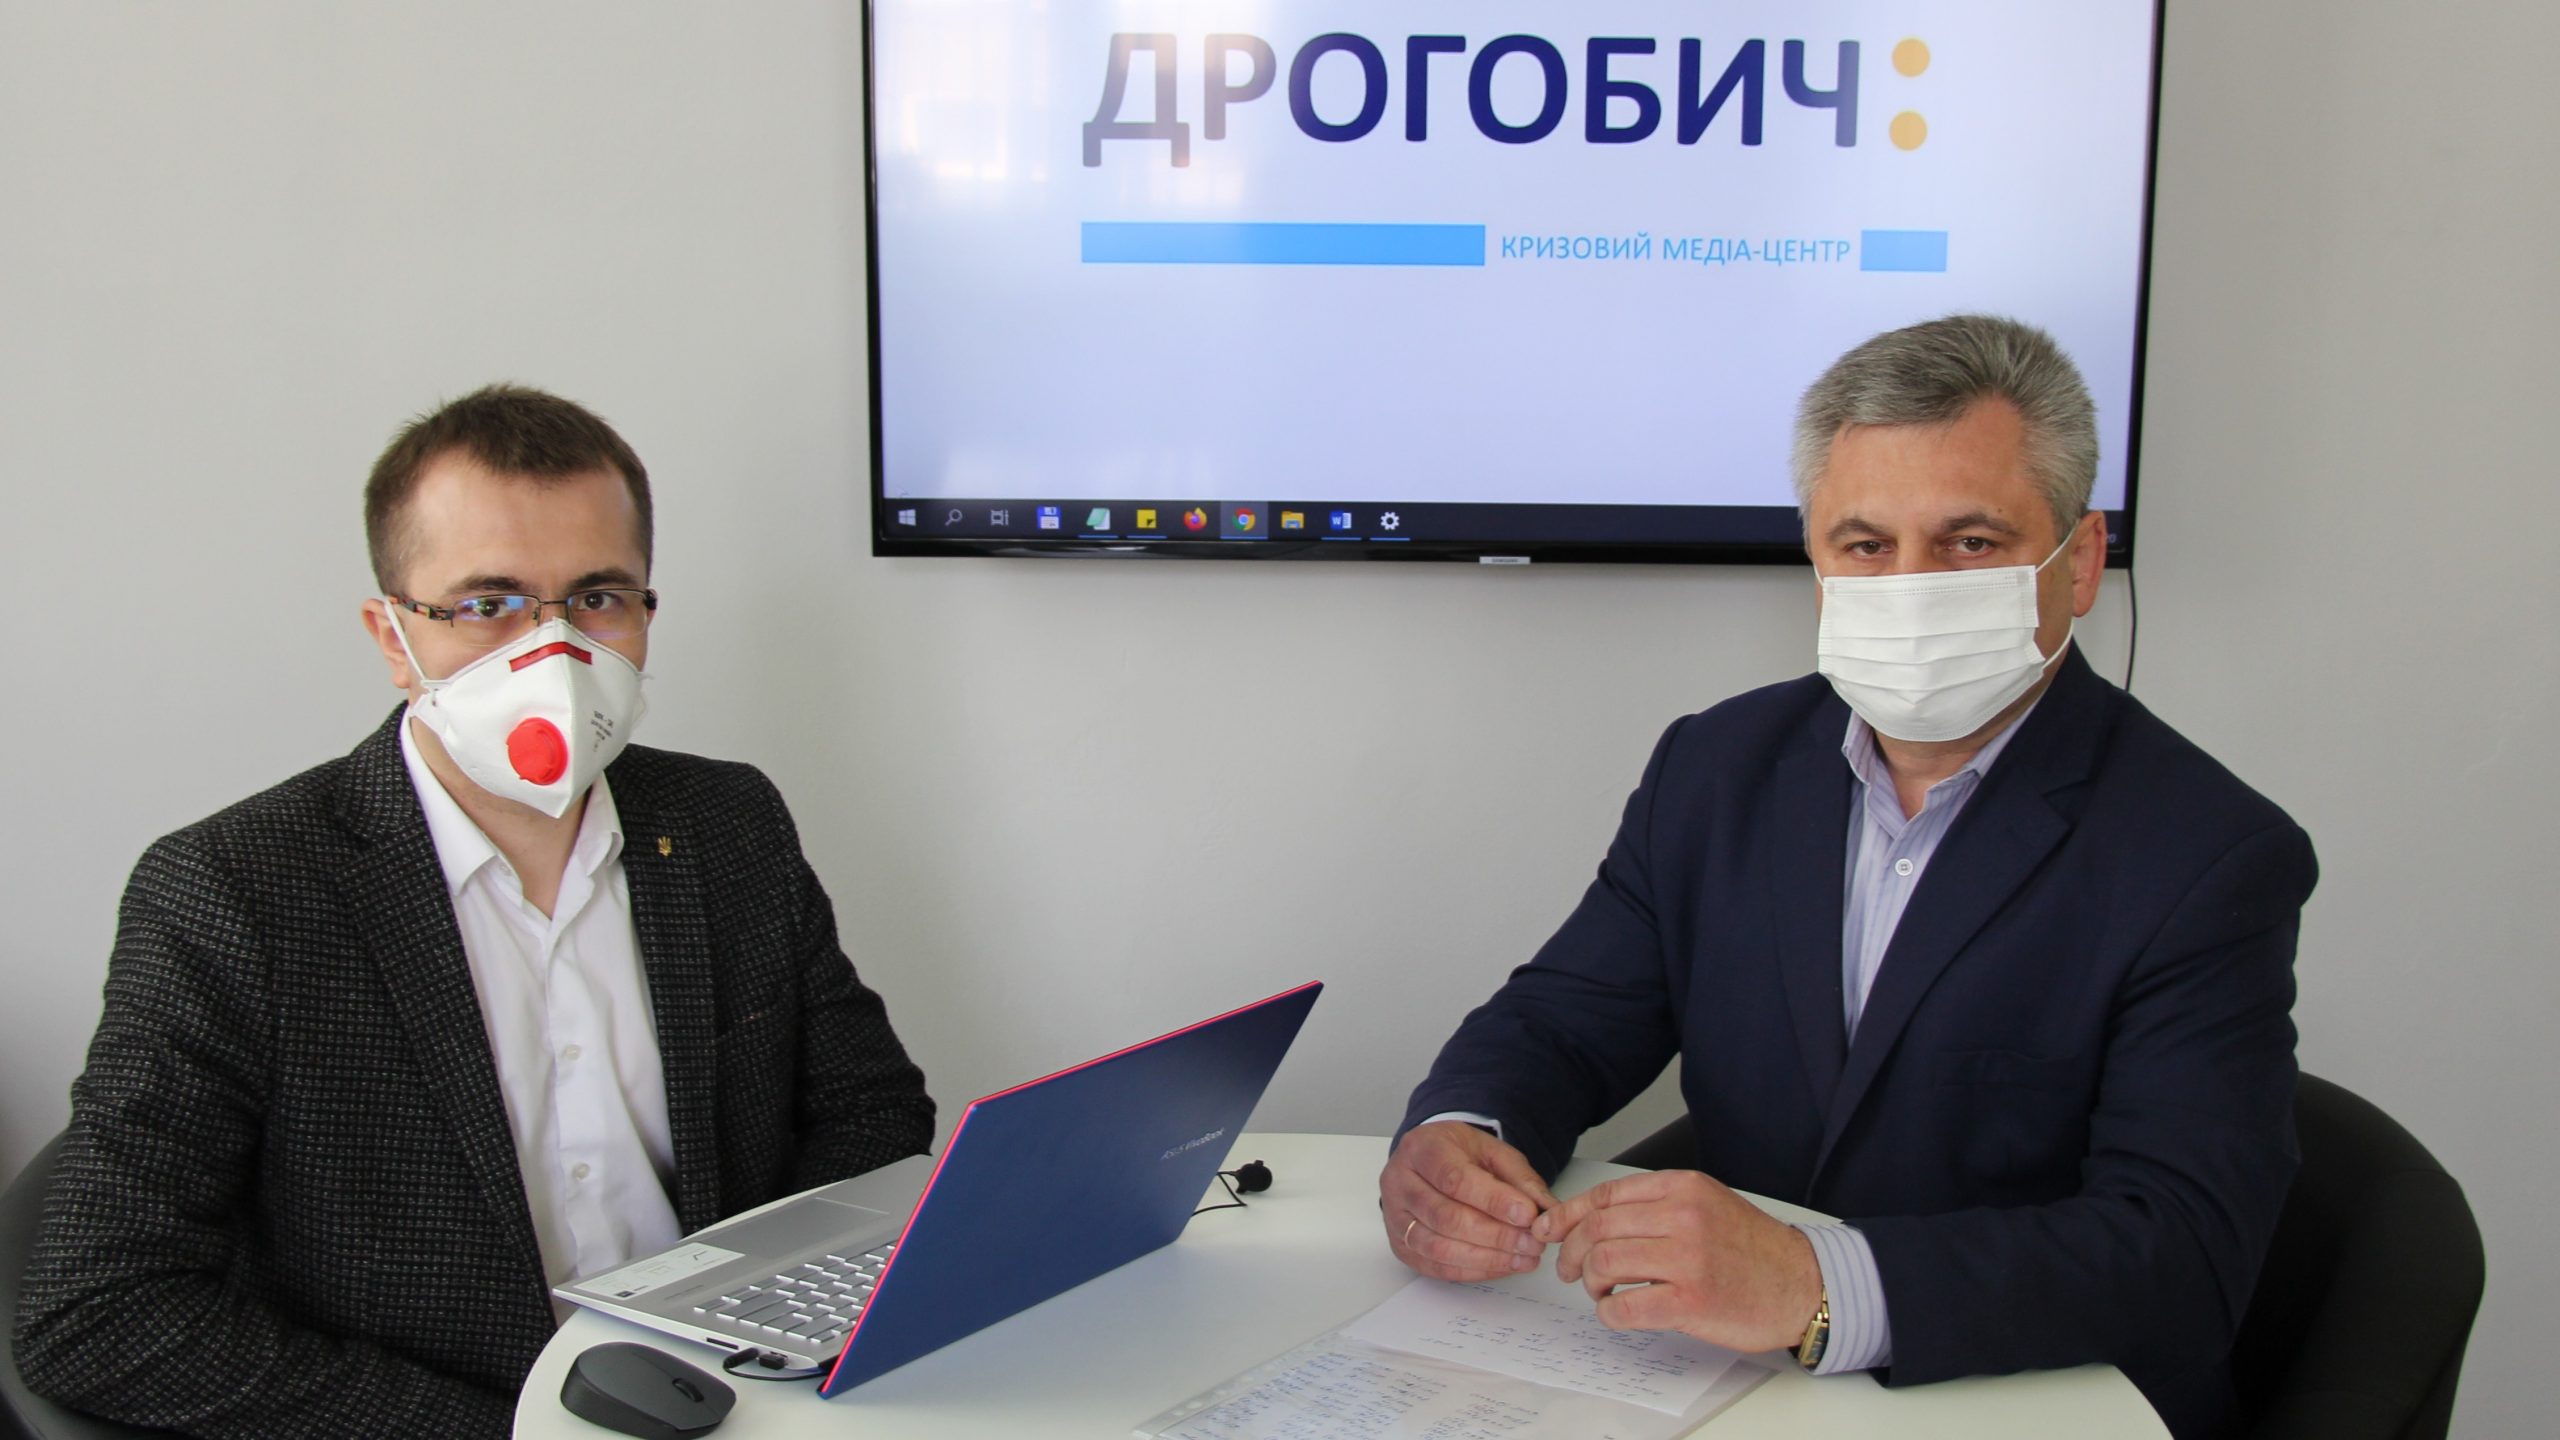 КМЦ «Дрогобич:»: Повідомлення щодо ситуації з інфікованими коронавірусом у Дрогобичі та регіоні